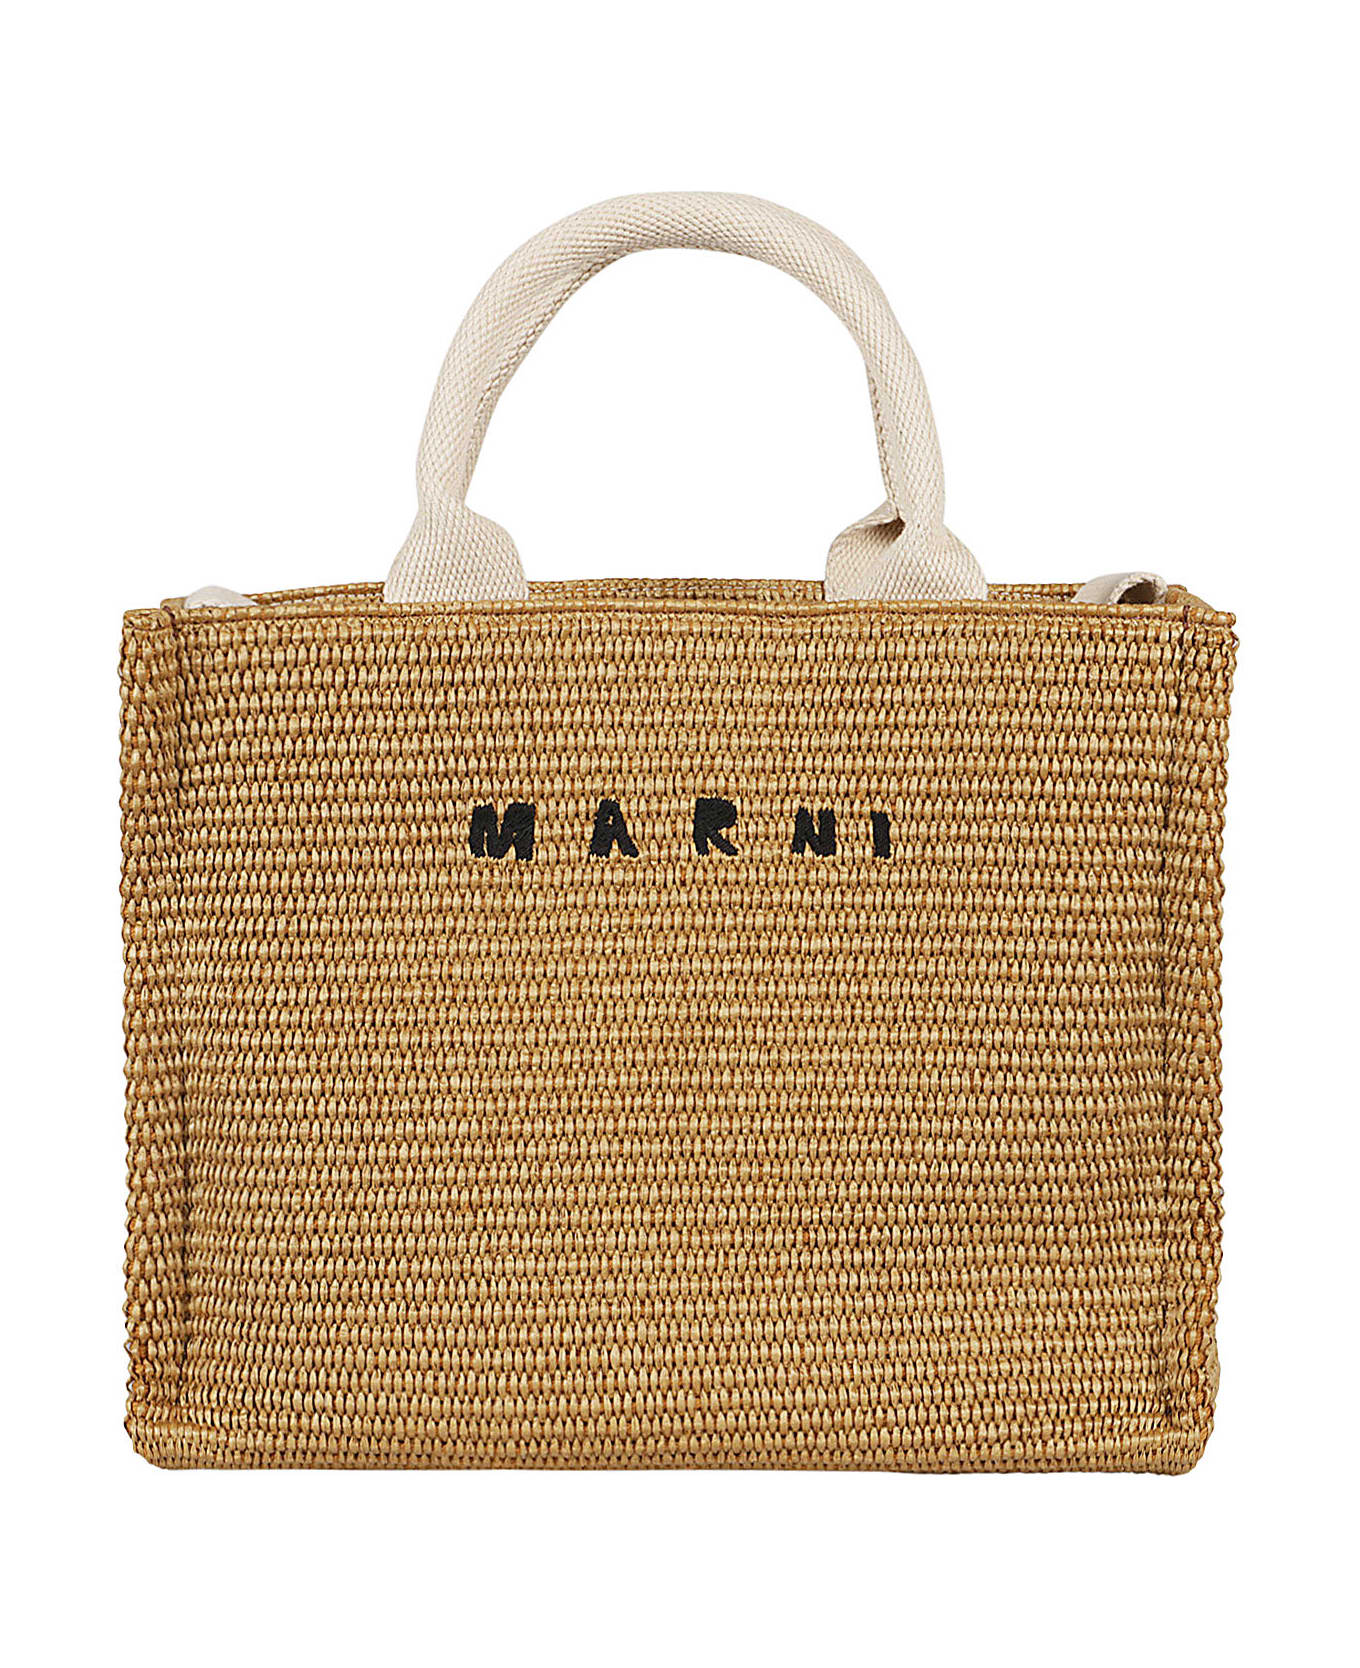 Marni Small Basket - Corda